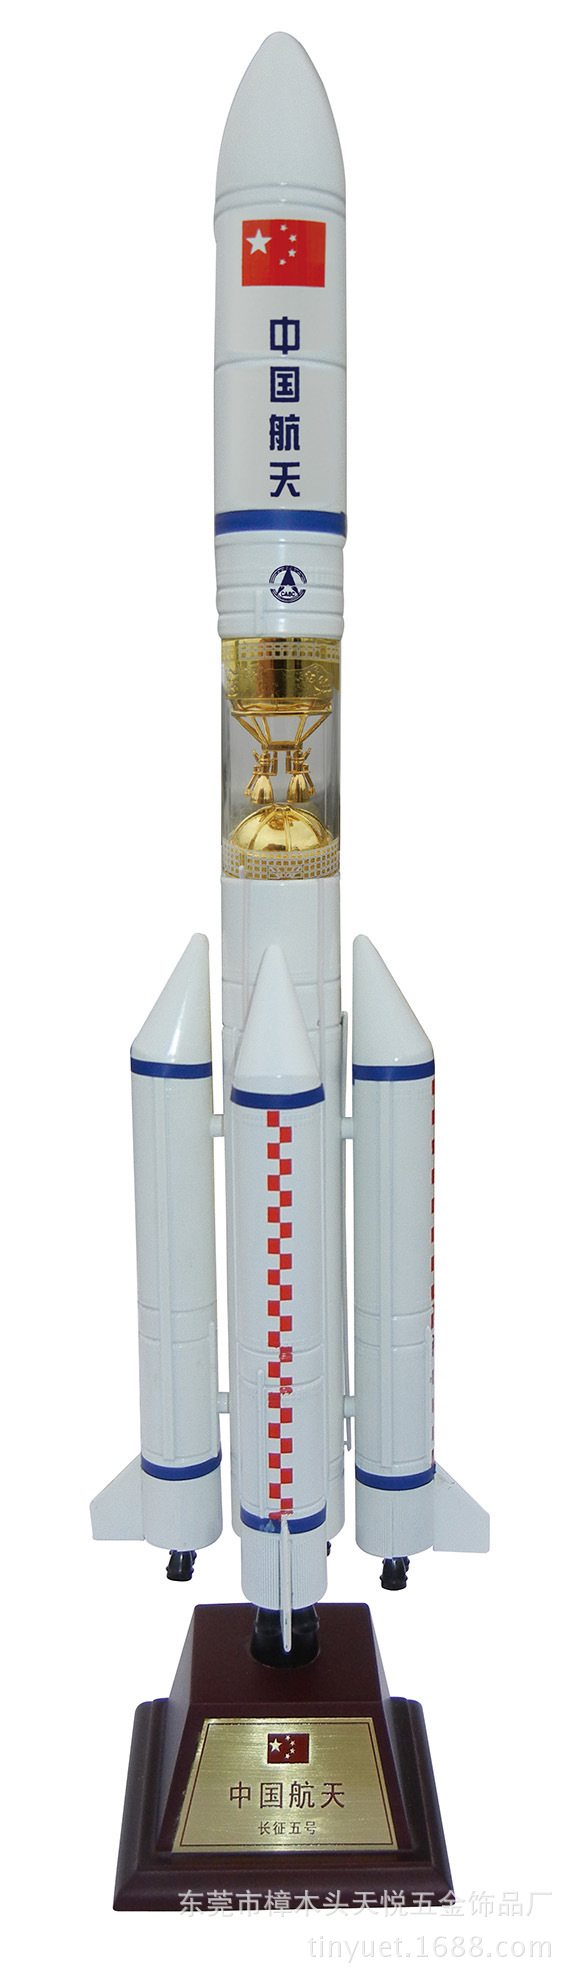 k05-49火箭模型摆件 水晶模型摆件 卫星发射模型